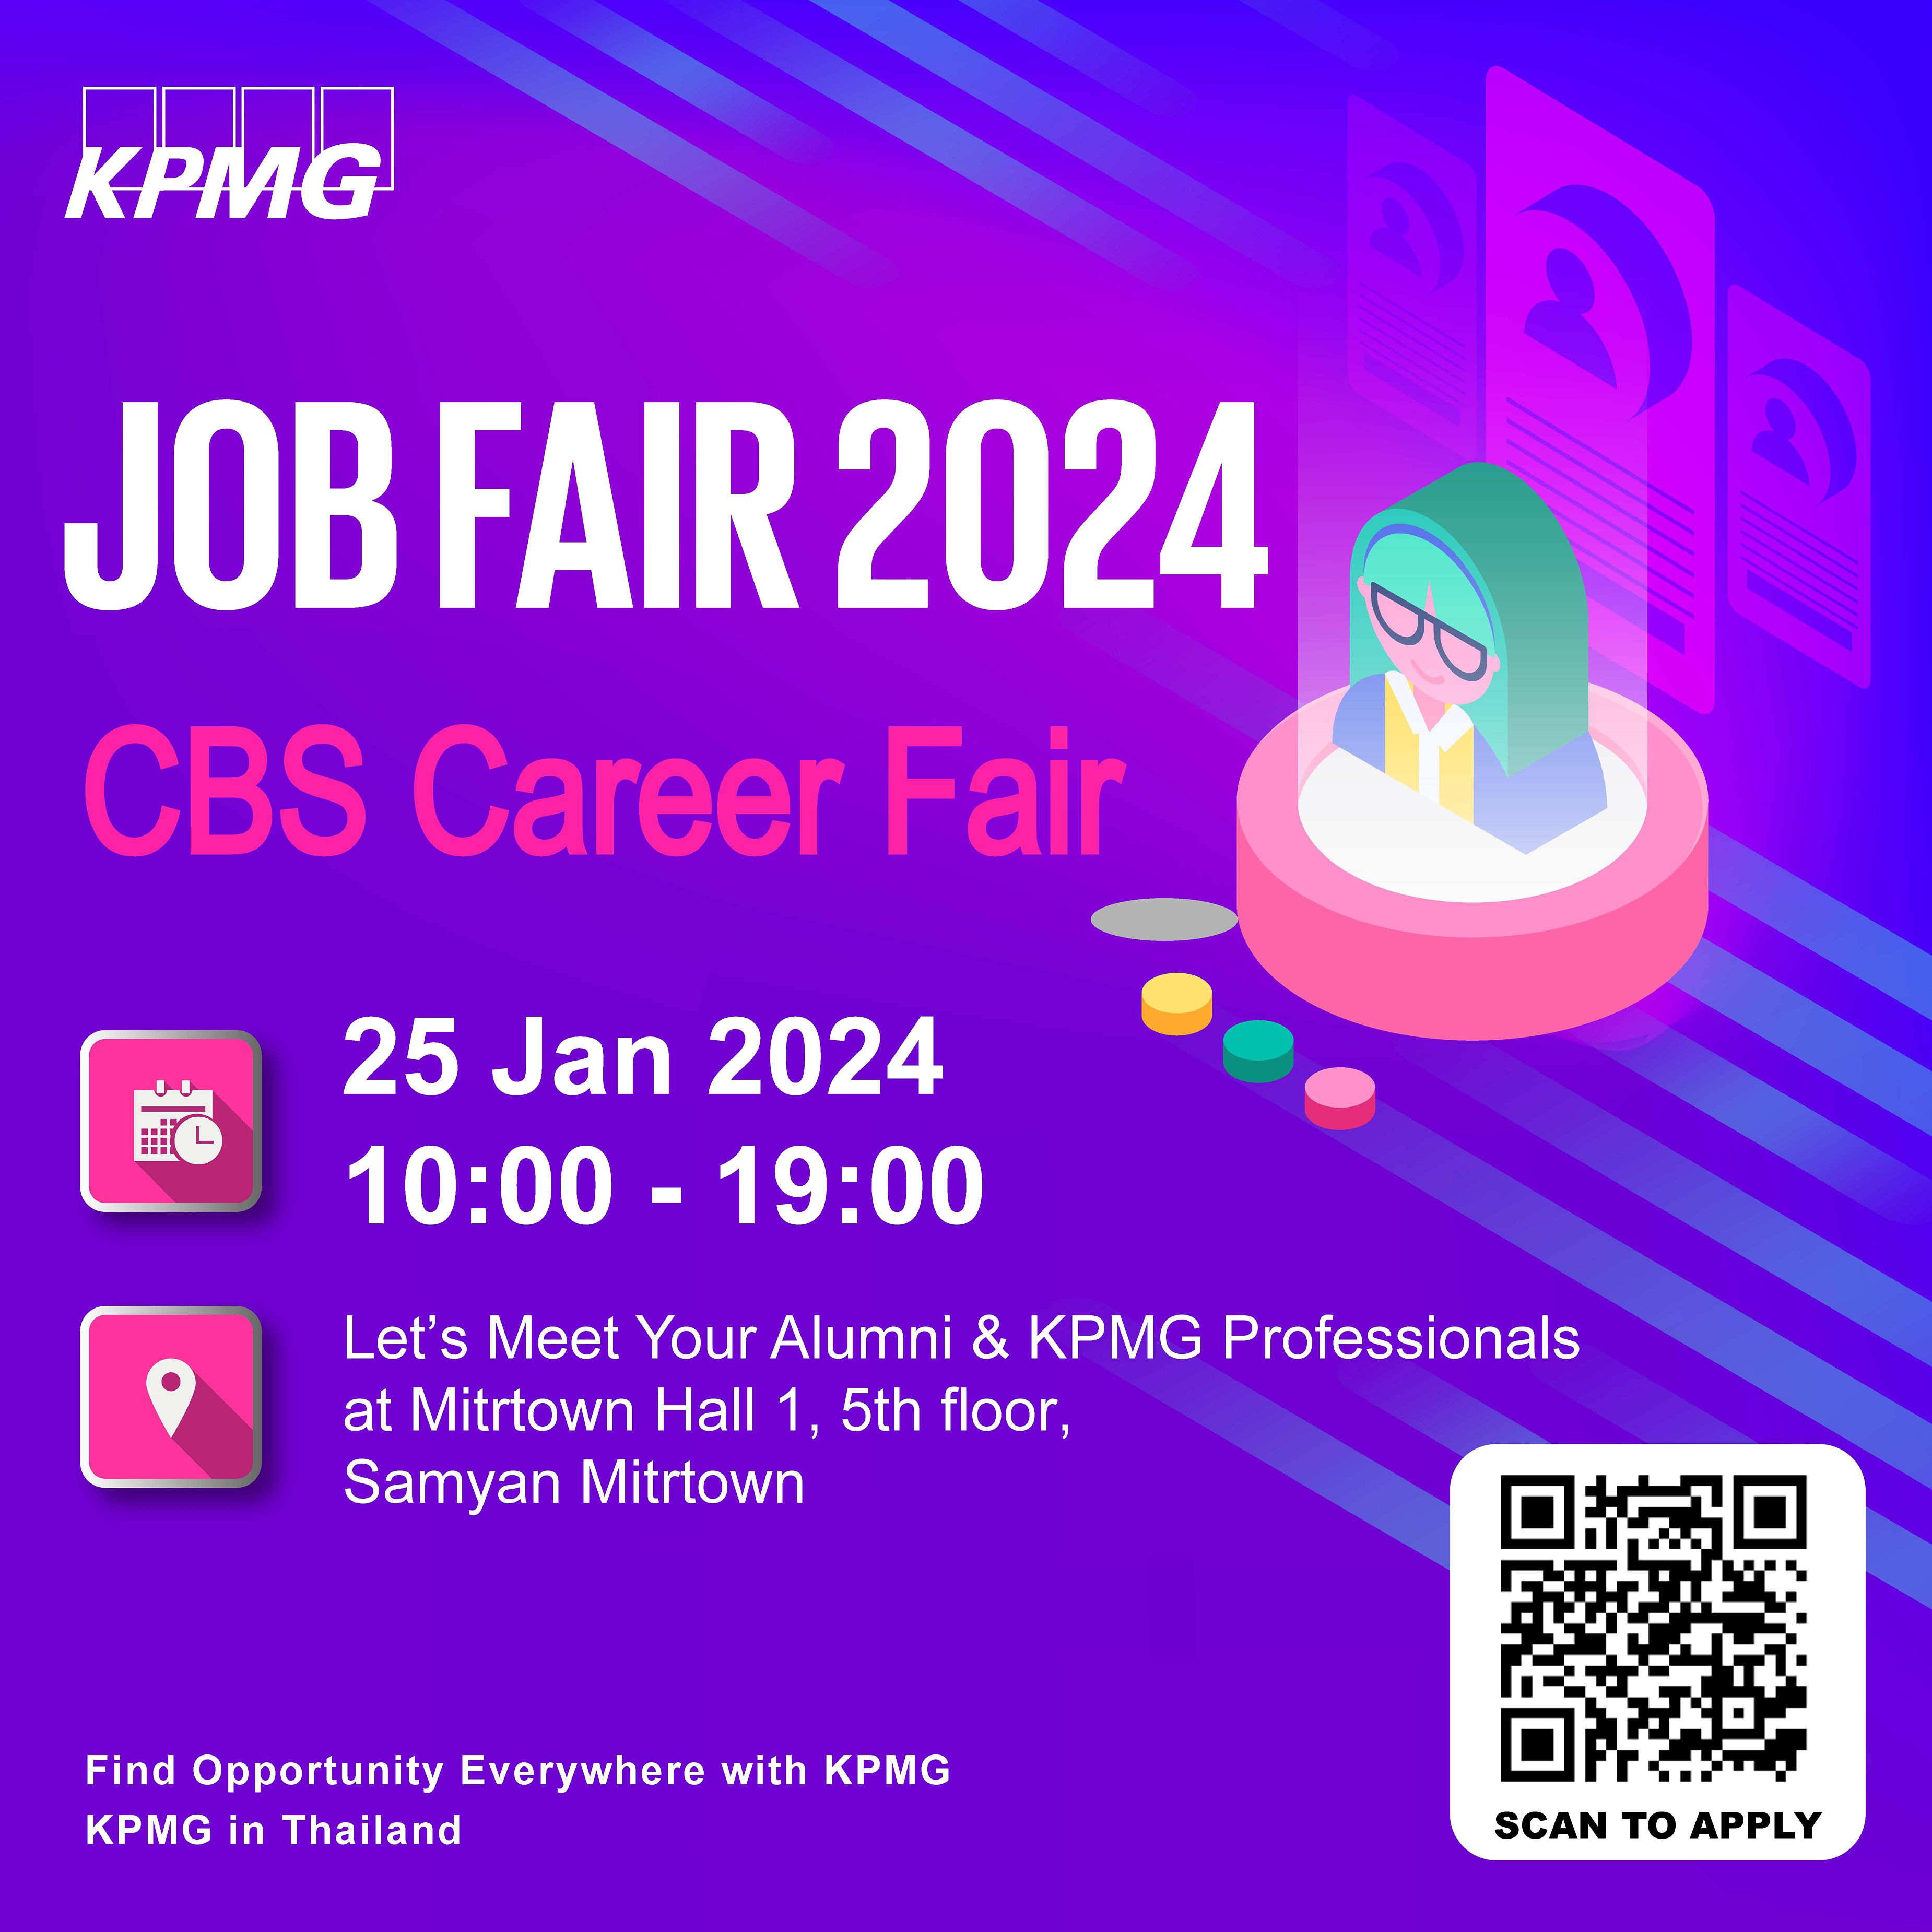 CBS Career Fair 2024